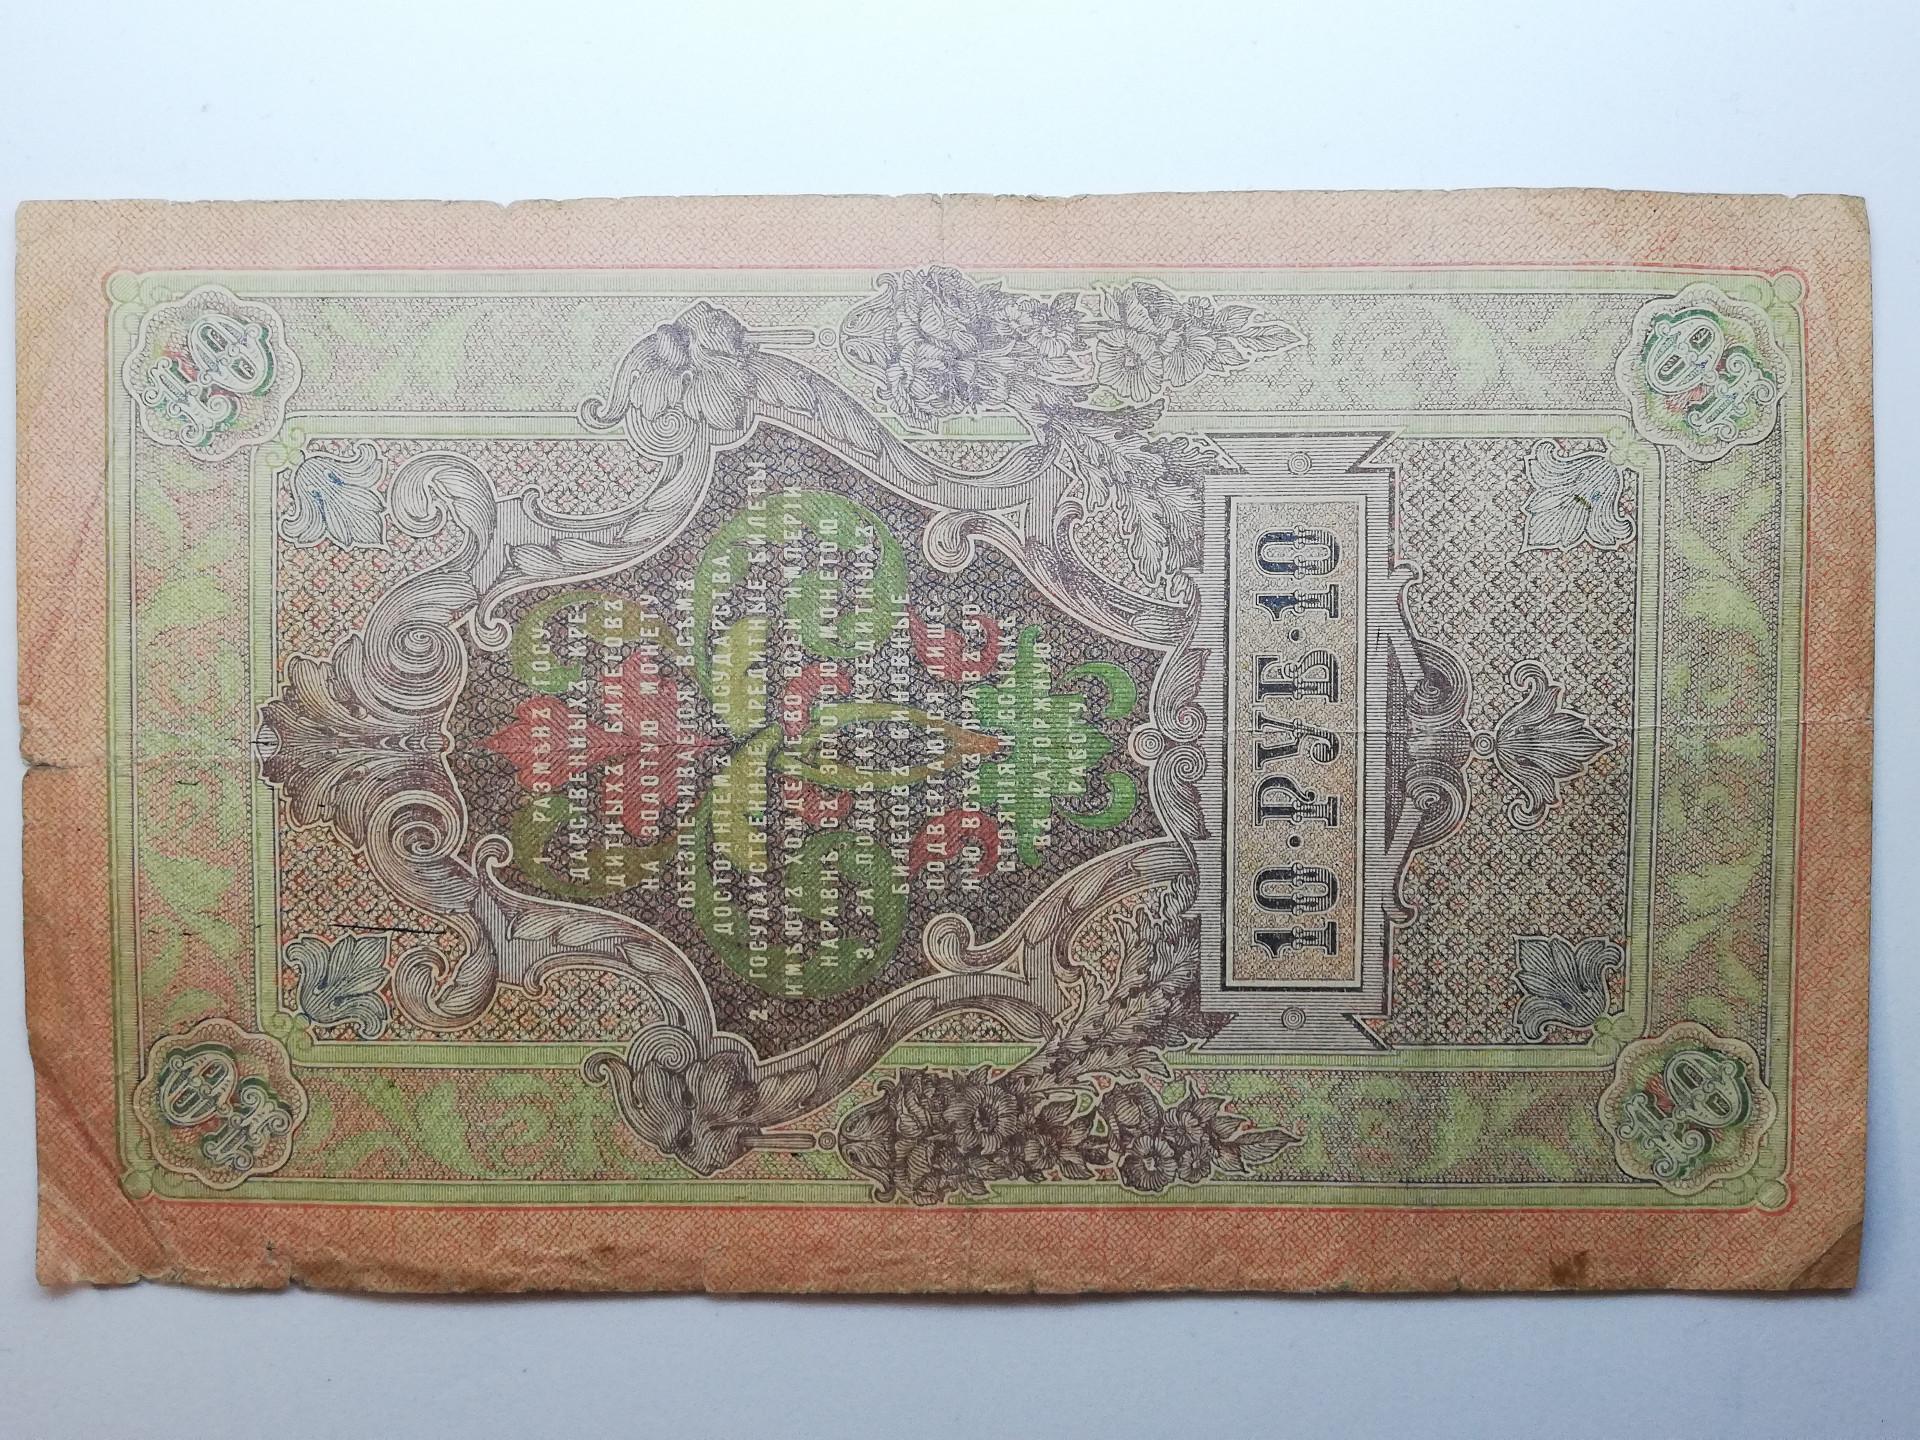 1909 10 rubliu